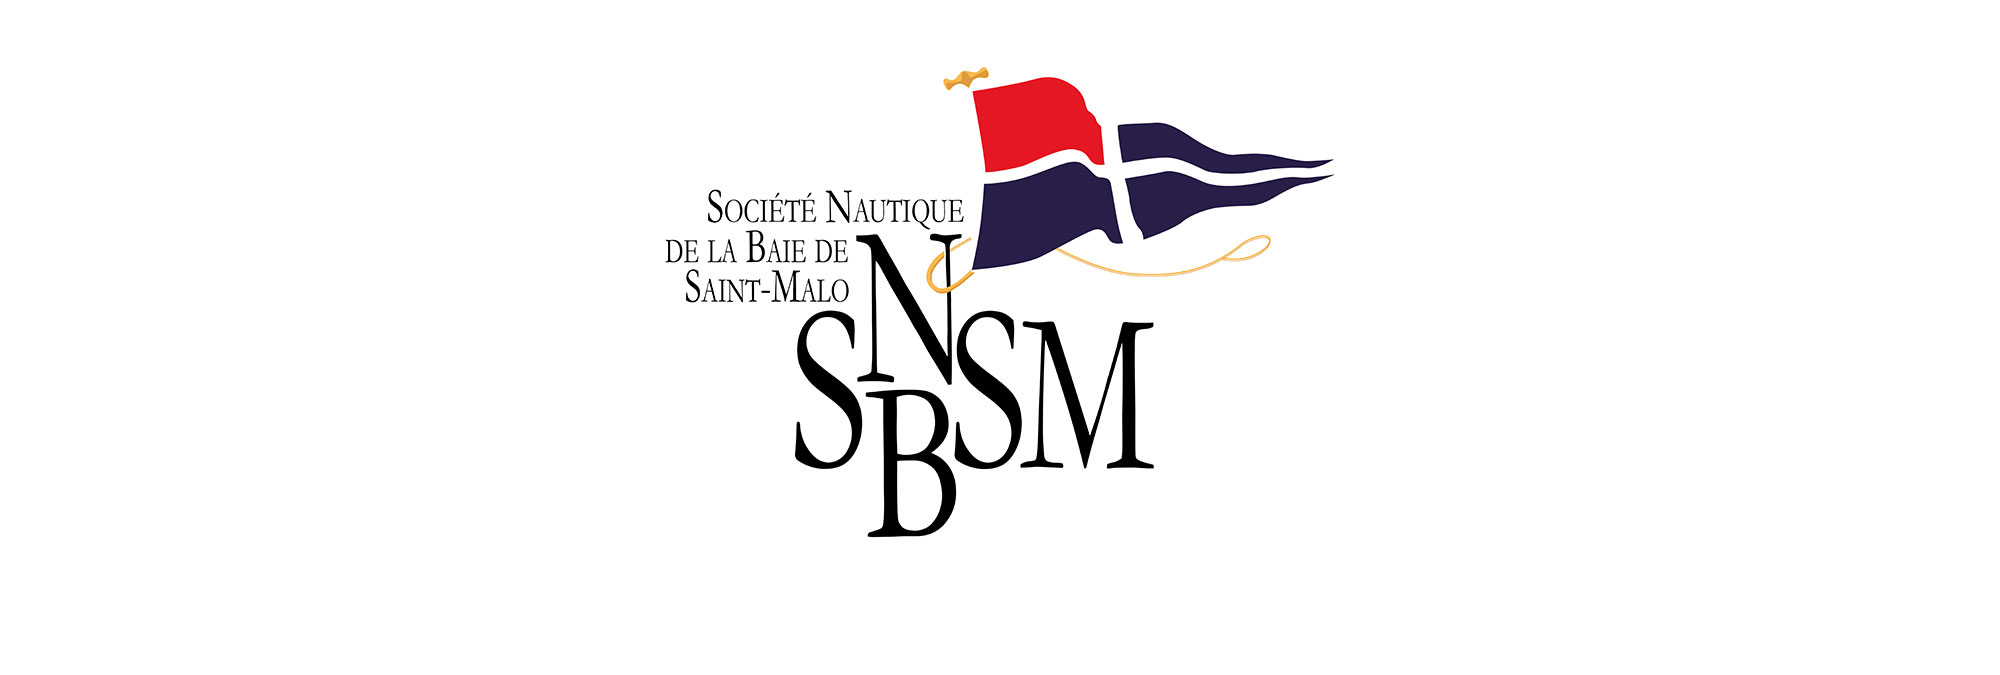 Société Nautique de la Baie de Saint-Malo